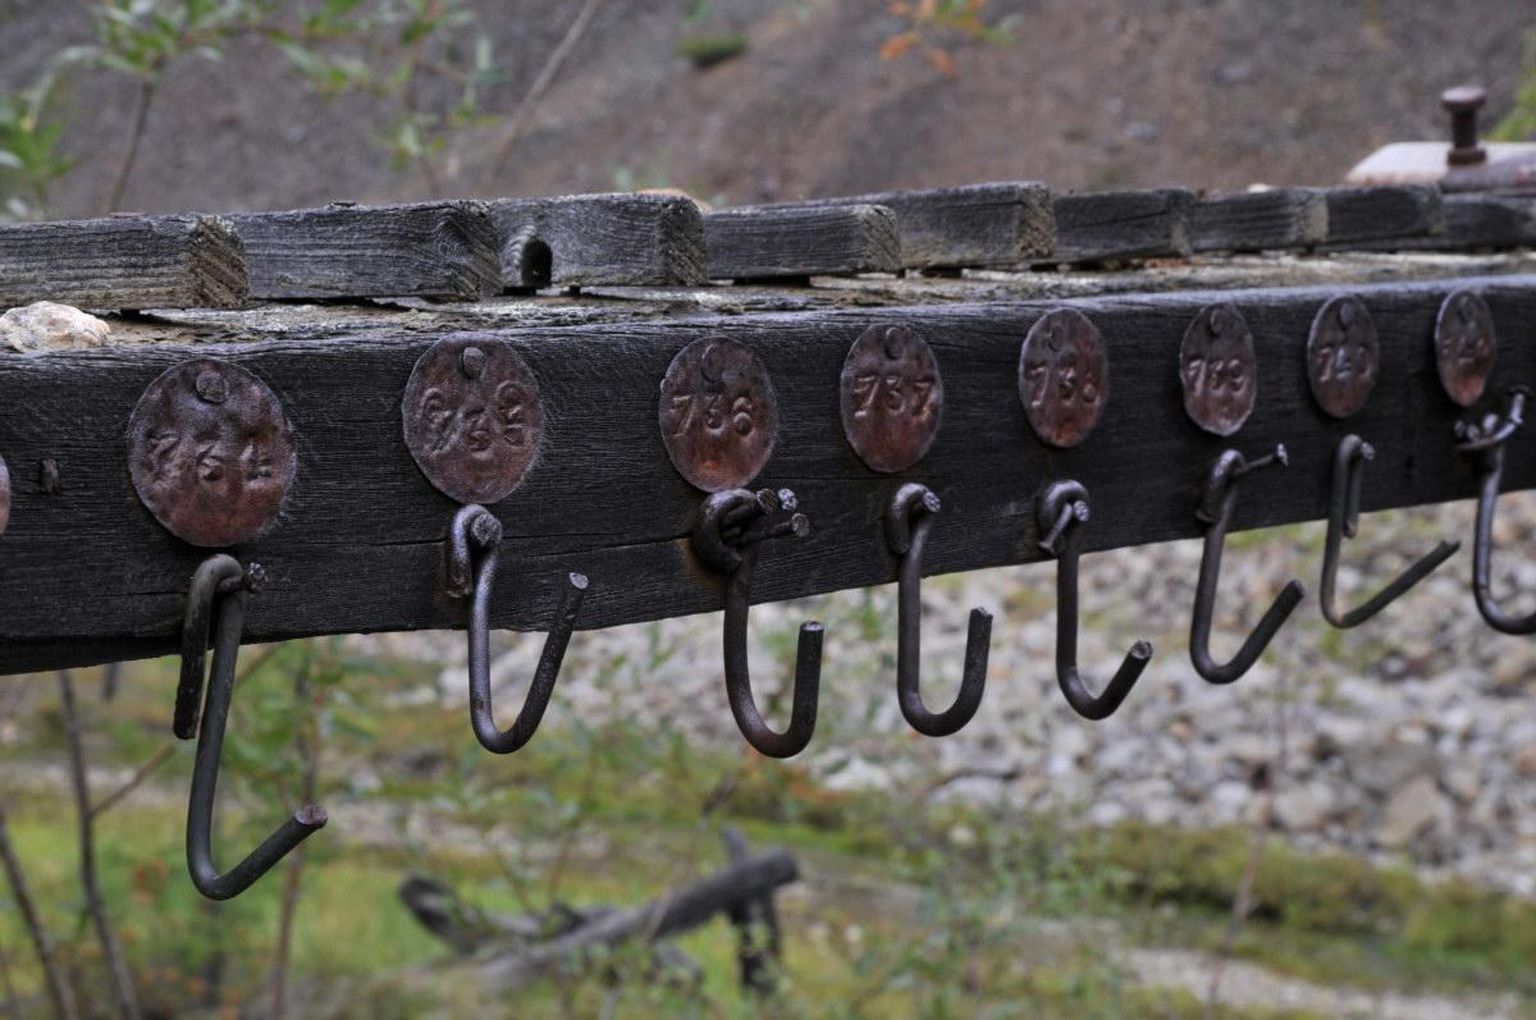 Kolõma trassil asuvast Ust-Nera asulast 30 km kaugusel asuva Aljaskitovo laagri varemed 2011. aastal. Seal, tüüpilises Kolõma vangilaagris, kaevandasid vangid volframit.